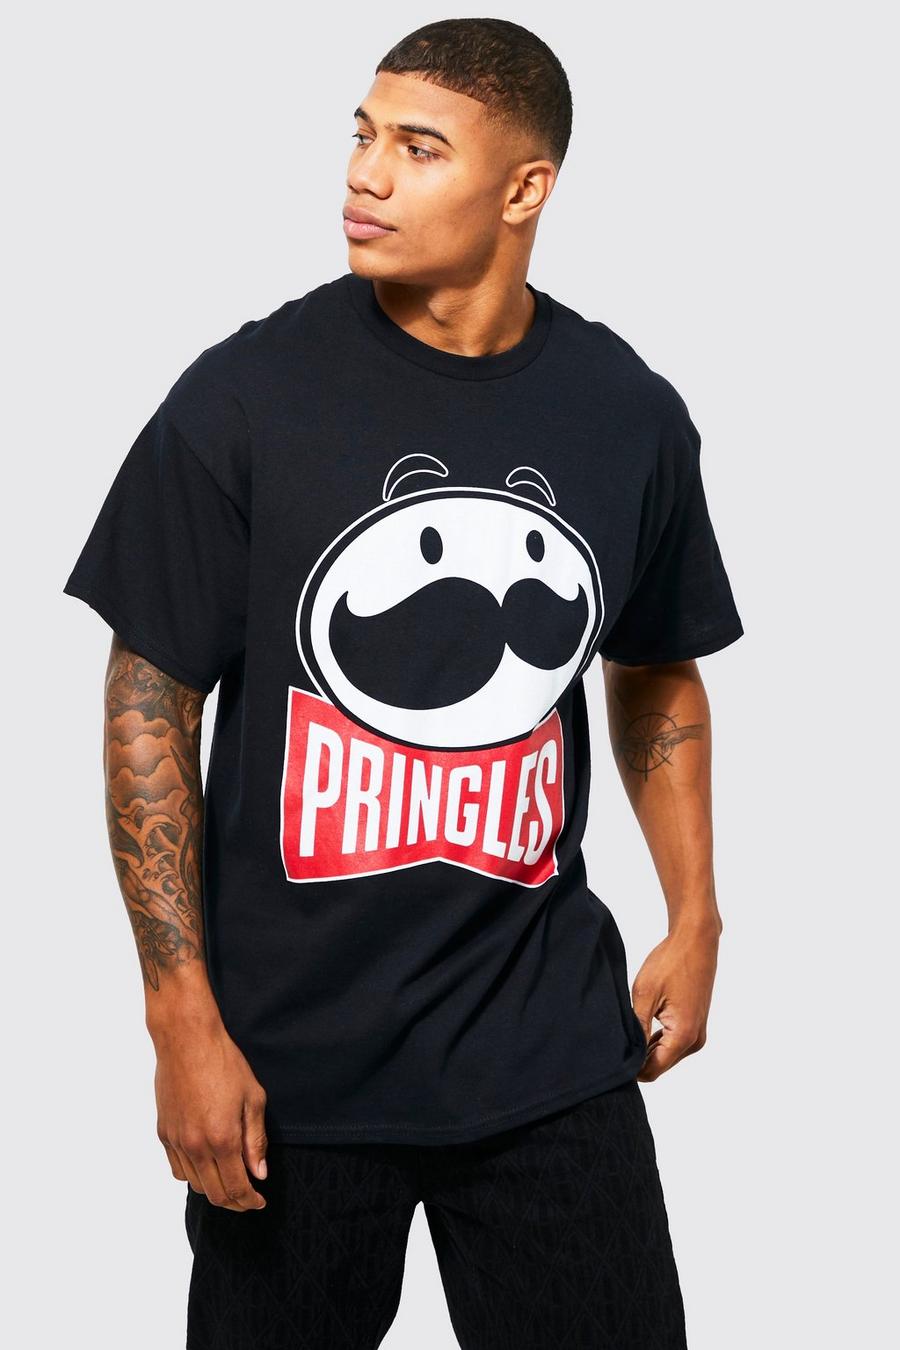 T-shirt oversize à imprimé Pringles, Black